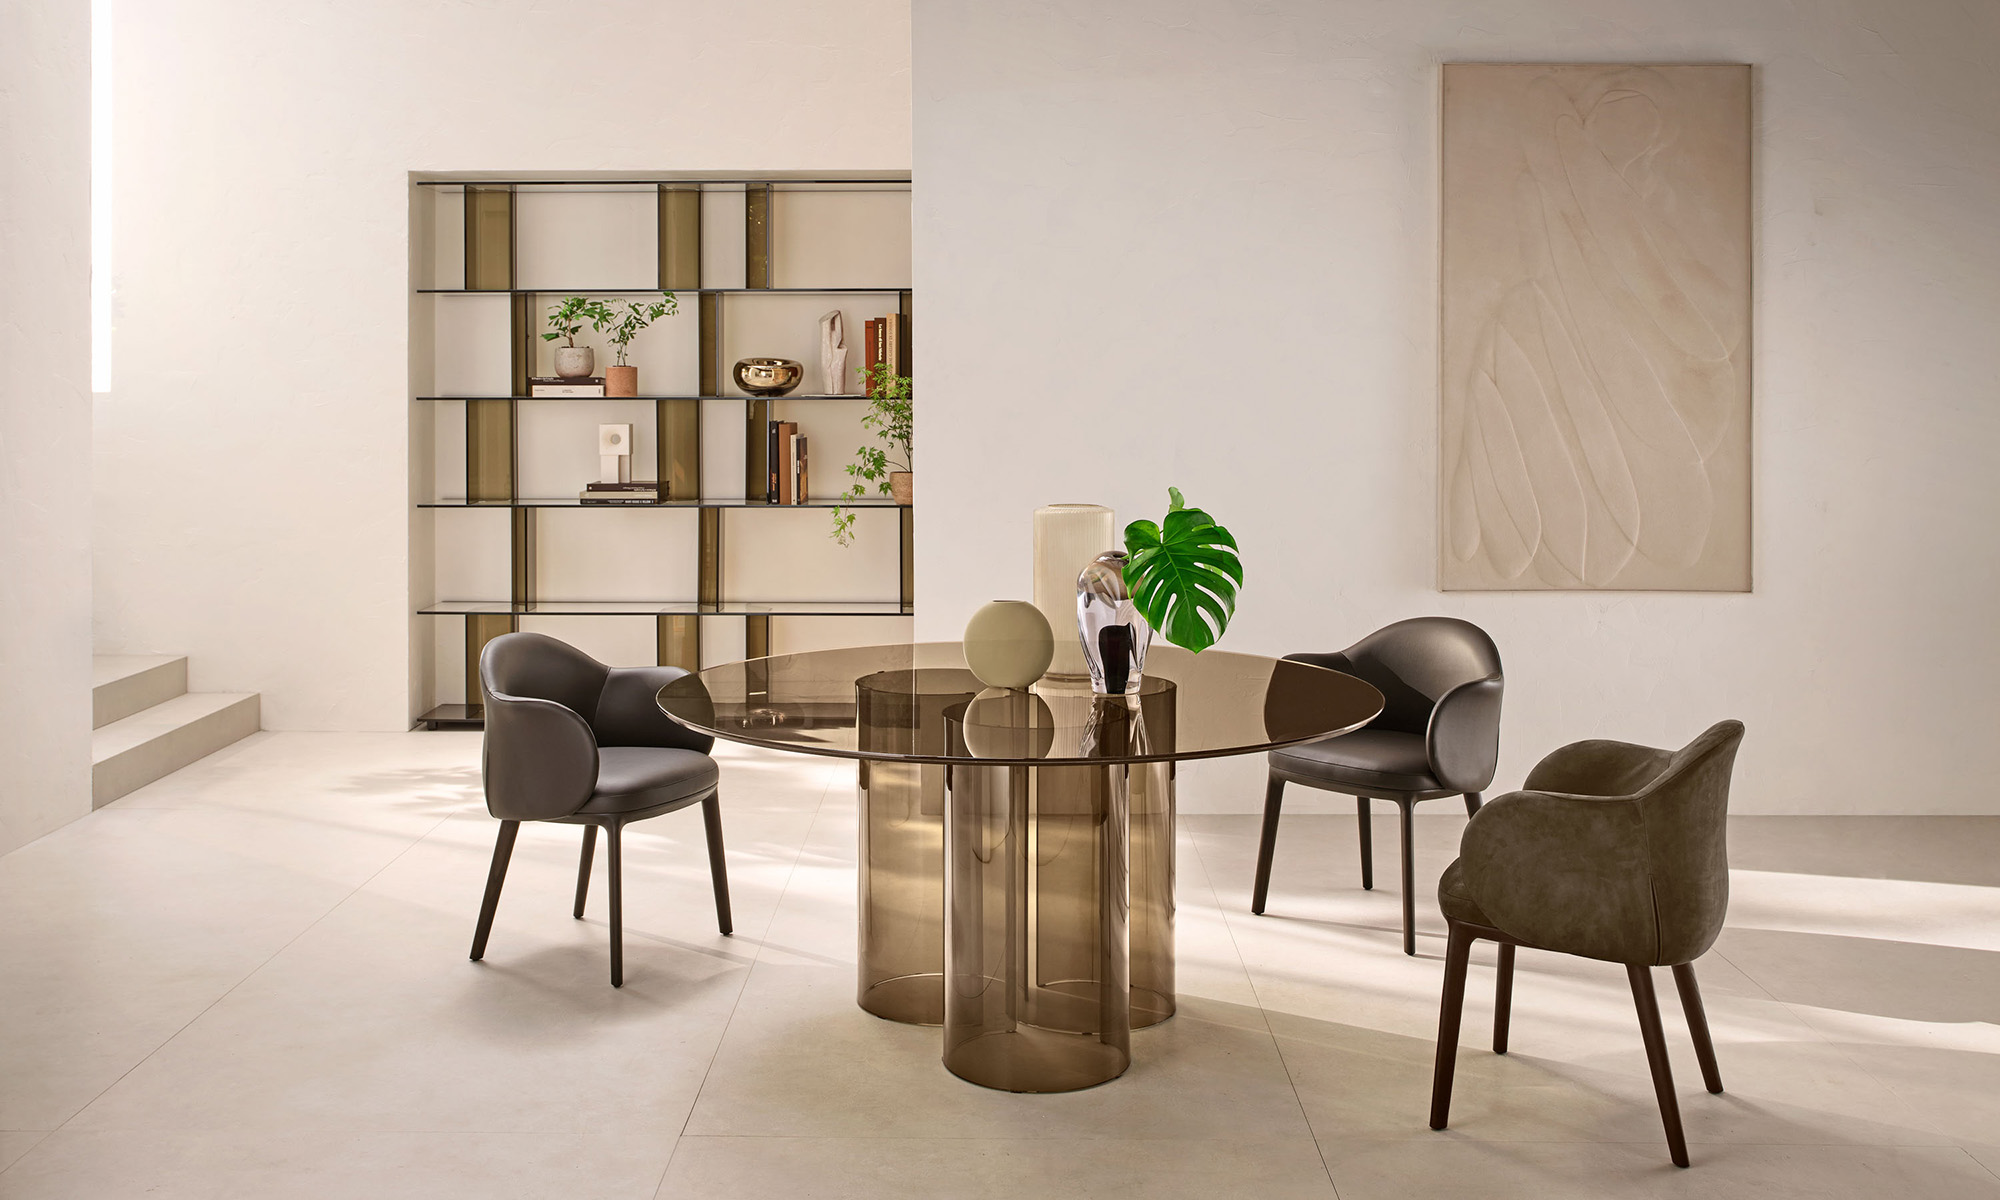 table, Italia Dordoni designed FIAM glass the – Luxor, by Rodolfo